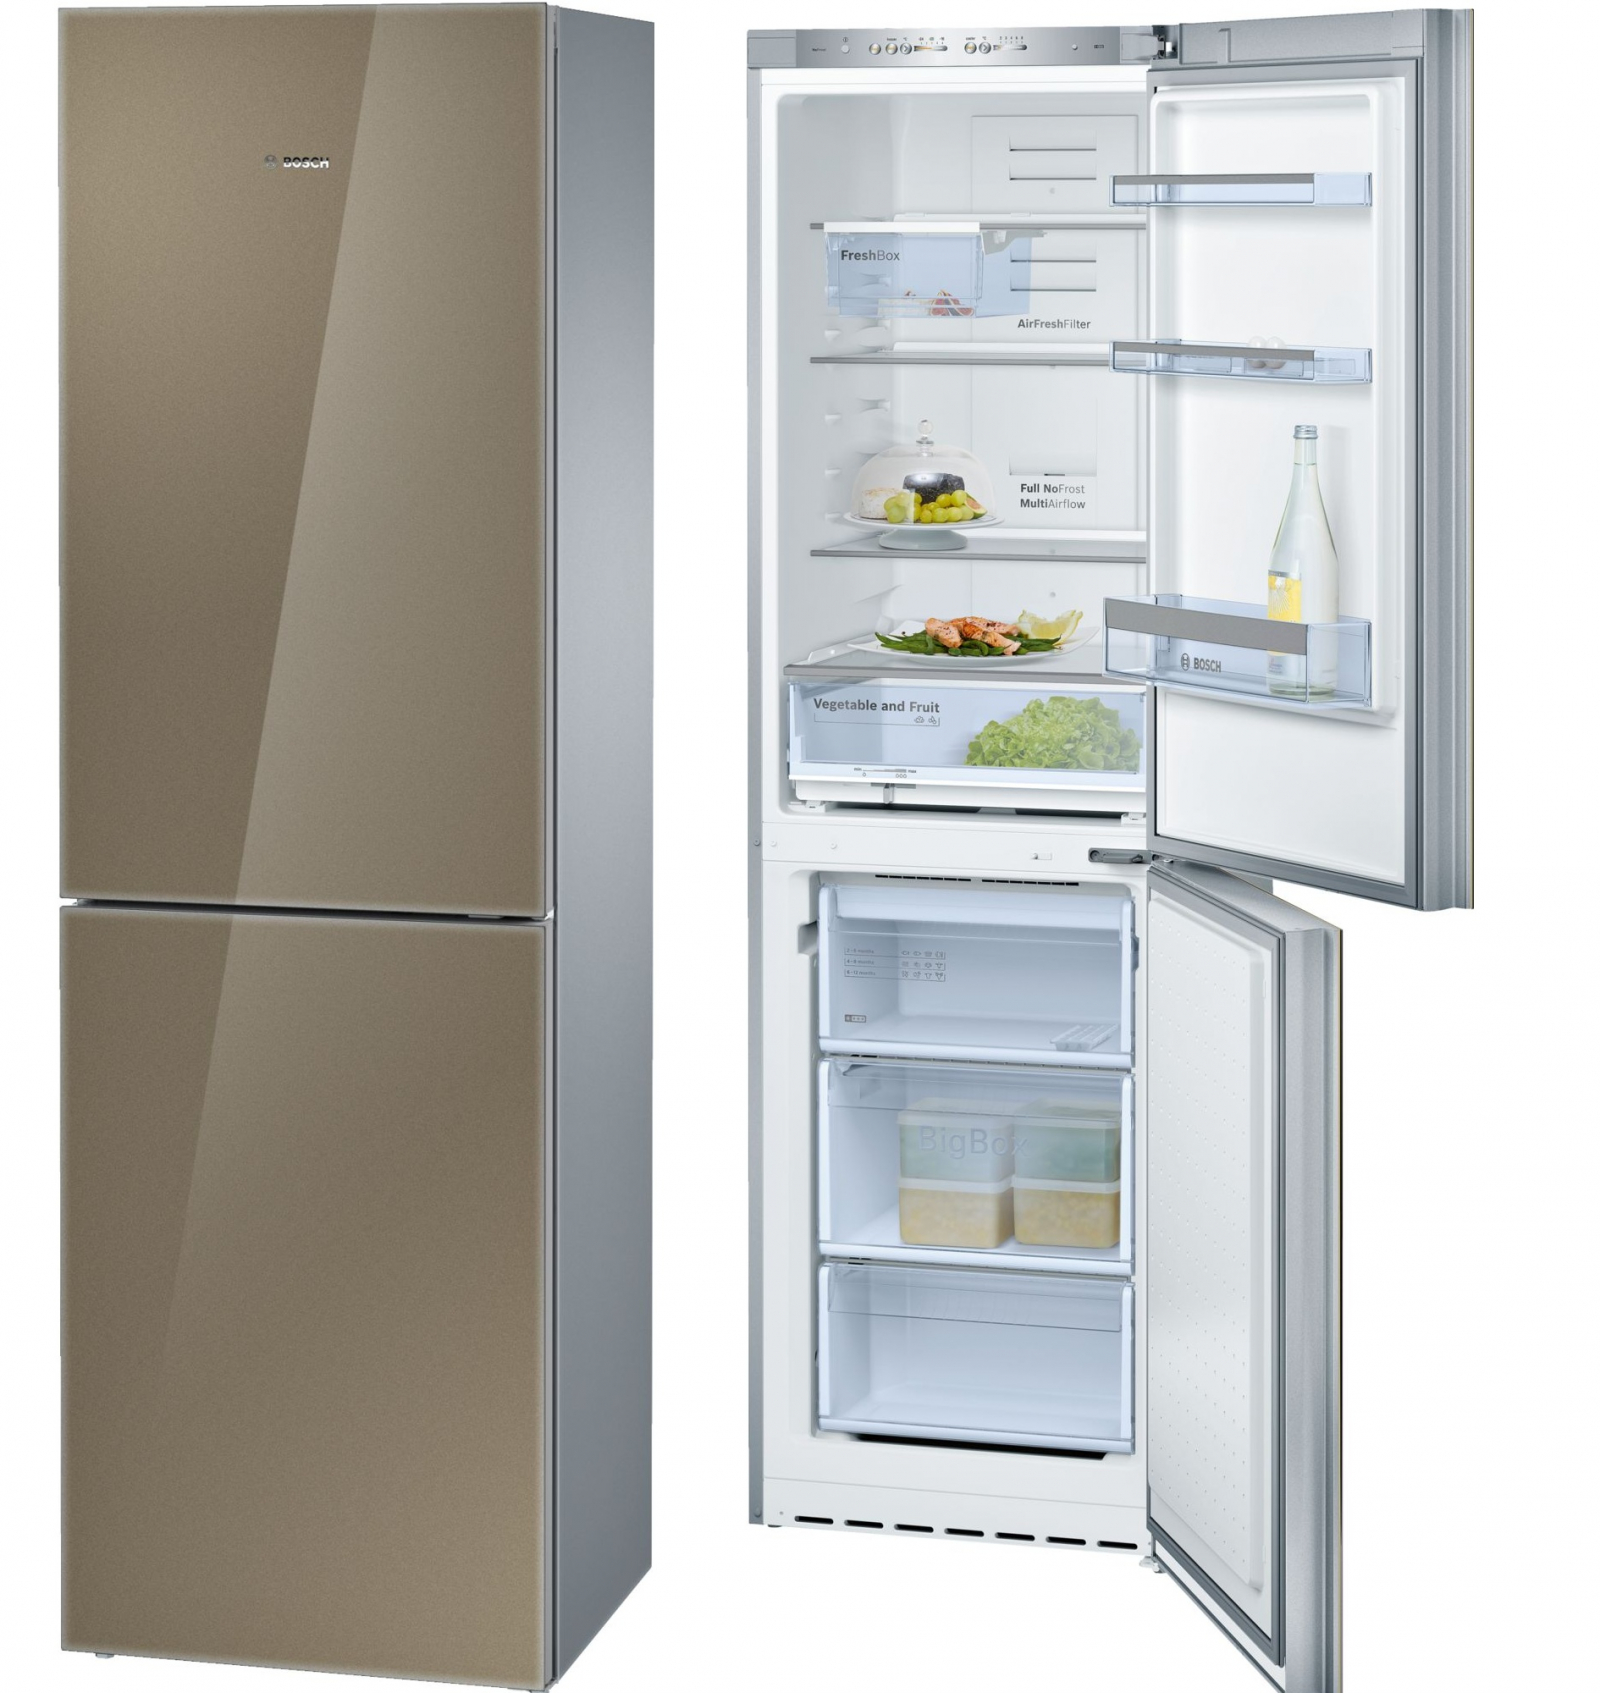 холодильник bosch kgn39lq10, купить в Красноярске холодильник bosch kgn39lq10,  купить в Красноярске дешево холодильник bosch kgn39lq10, купить в Красноярске минимальной цене холодильник bosch kgn39lq10